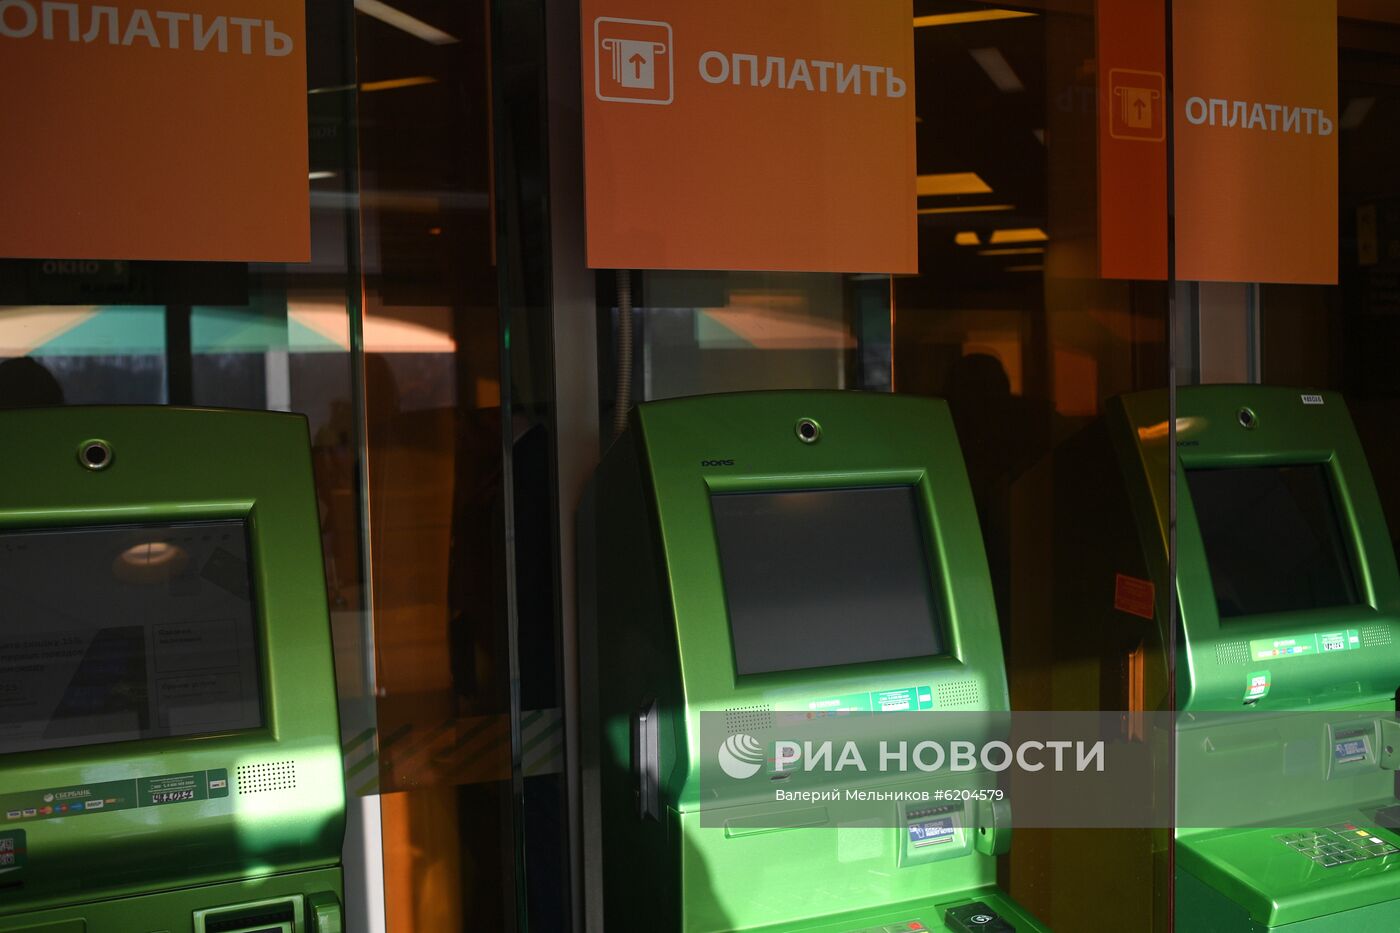 ЦБ рекомендовал ограничить выдачу денег через банкоматы